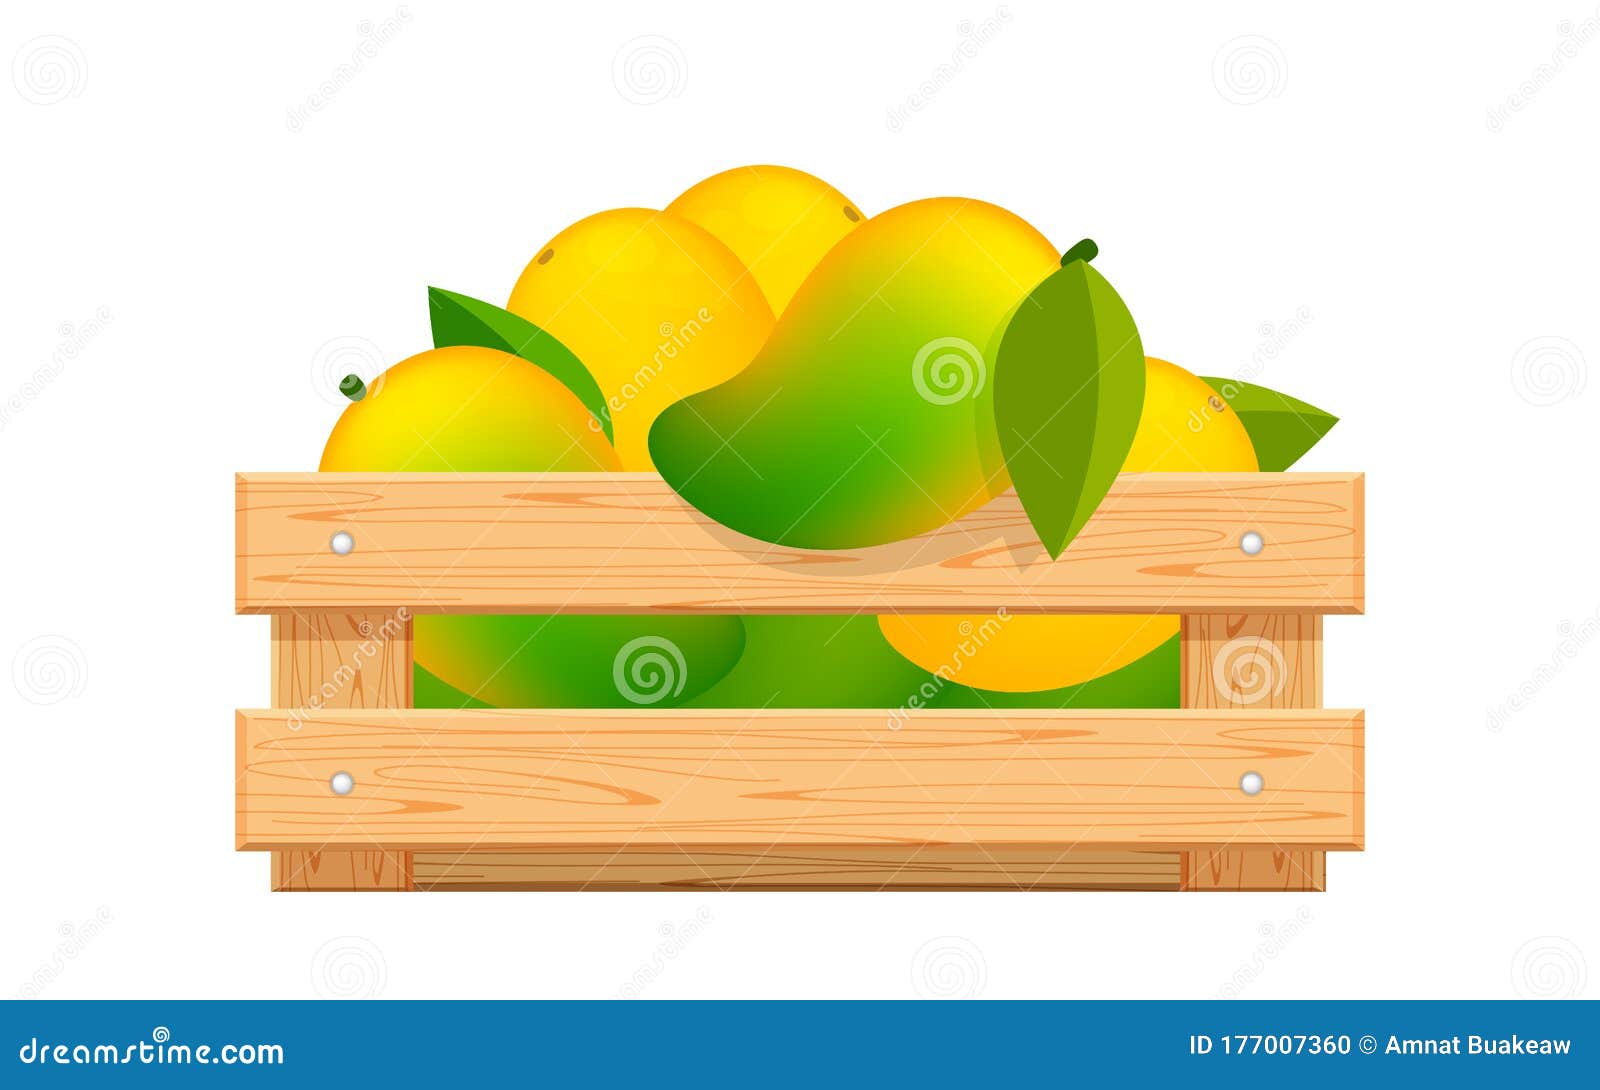 metal y madera de mango levandeo Soporte de mango con texto Home de 11 cm de altura decoración de mesa